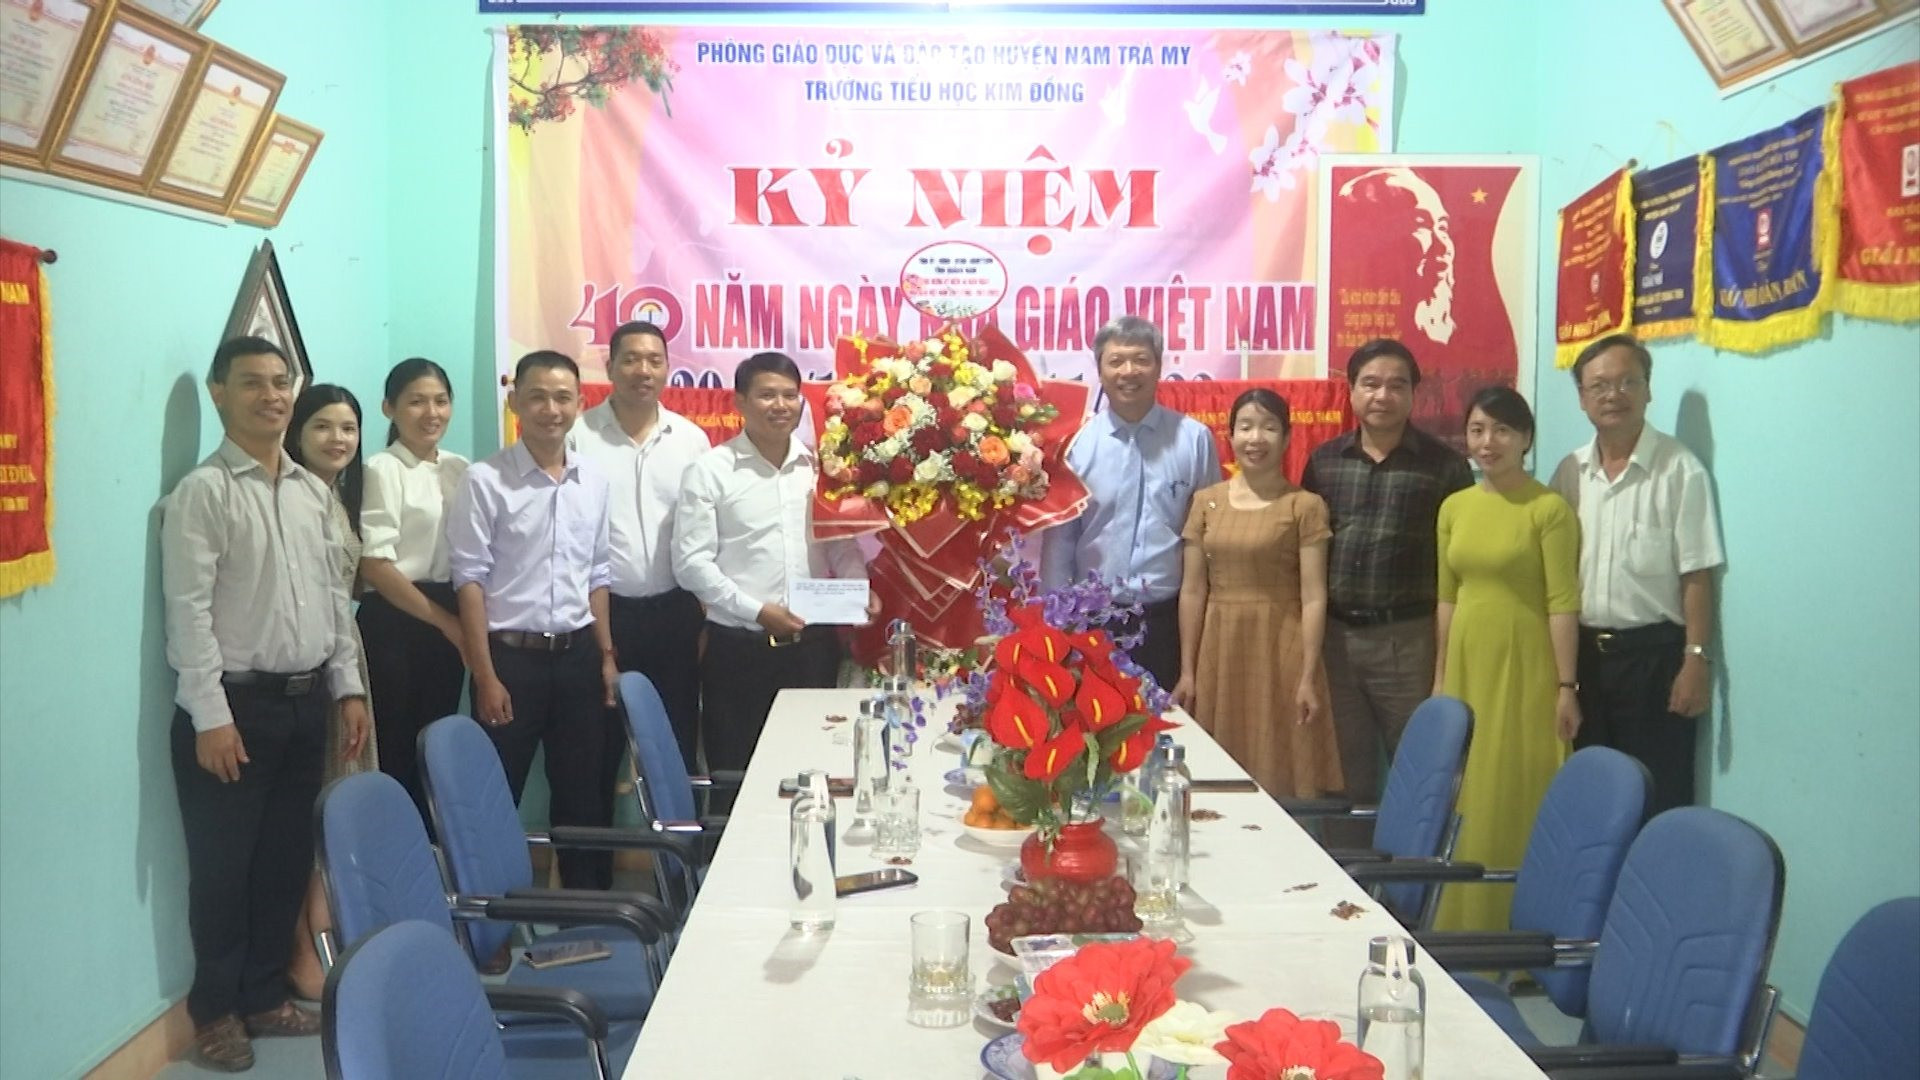 Phó Chủ tịch UBND tỉnh Hồ Quang Bửu tặng hoa chúc mừng 10/11 tại Trường Tiểu học Kim Đồng. Ảnh: P.T